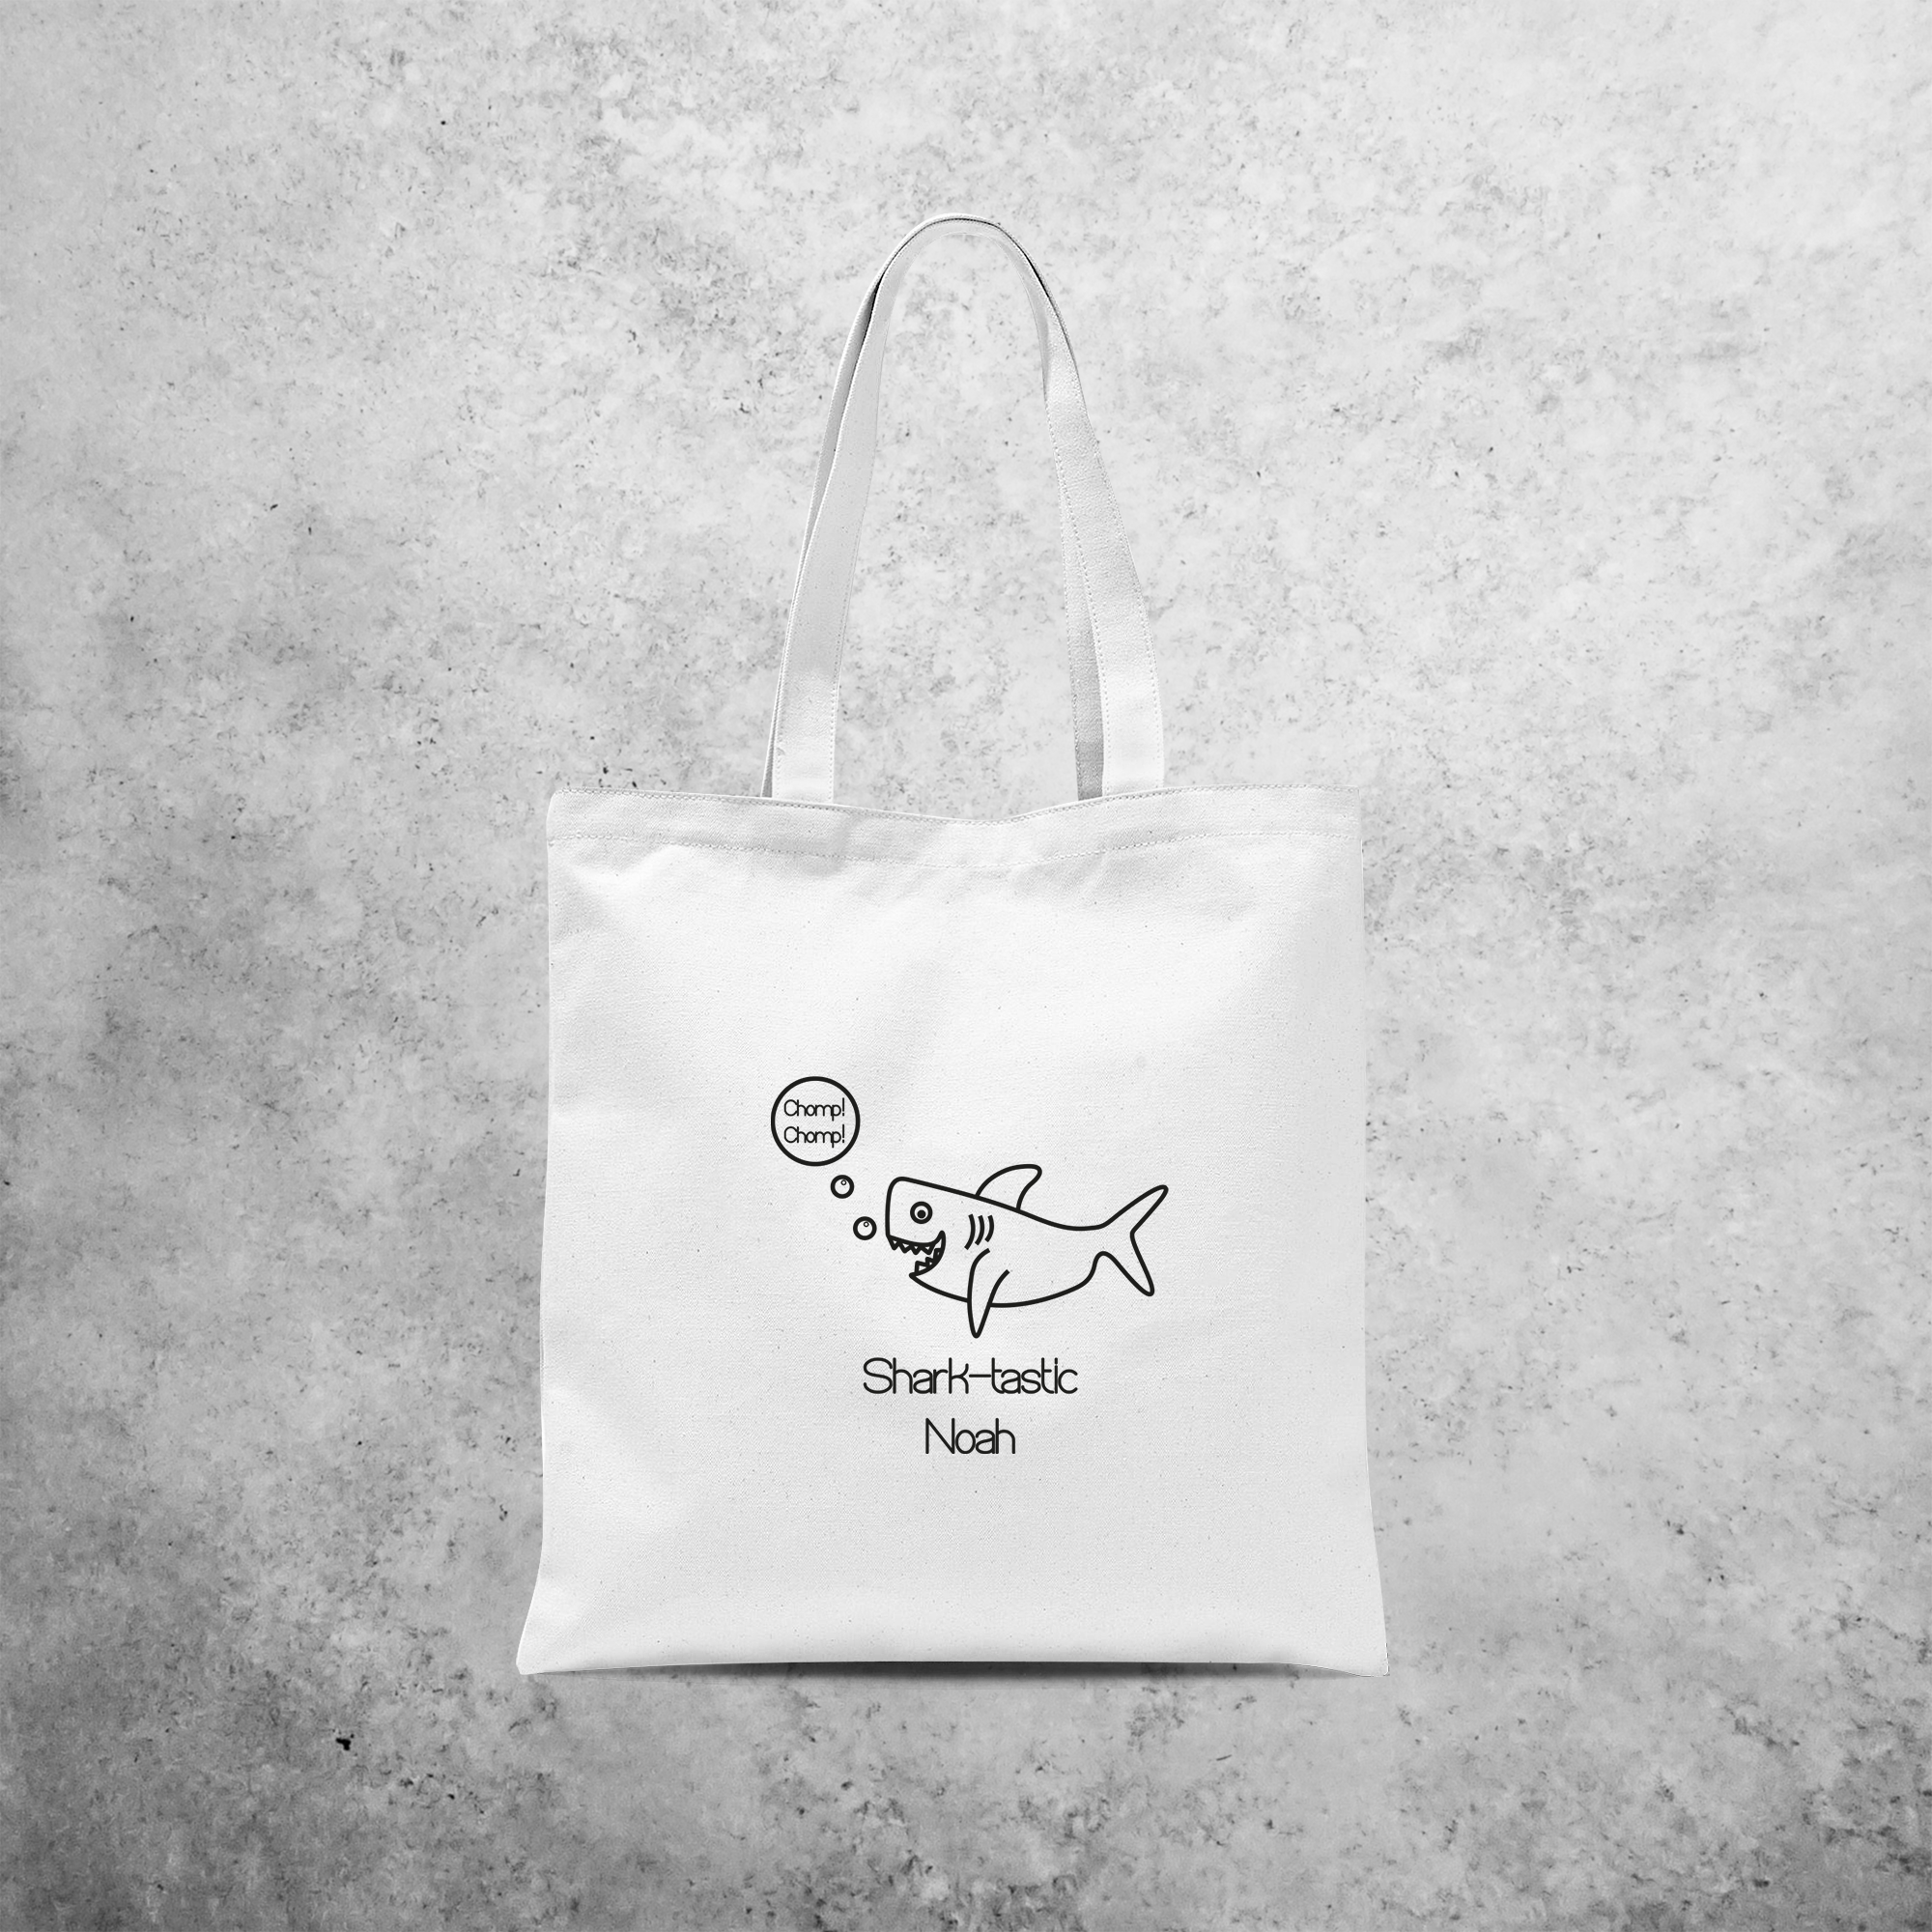 'Sharktastic' tote bag